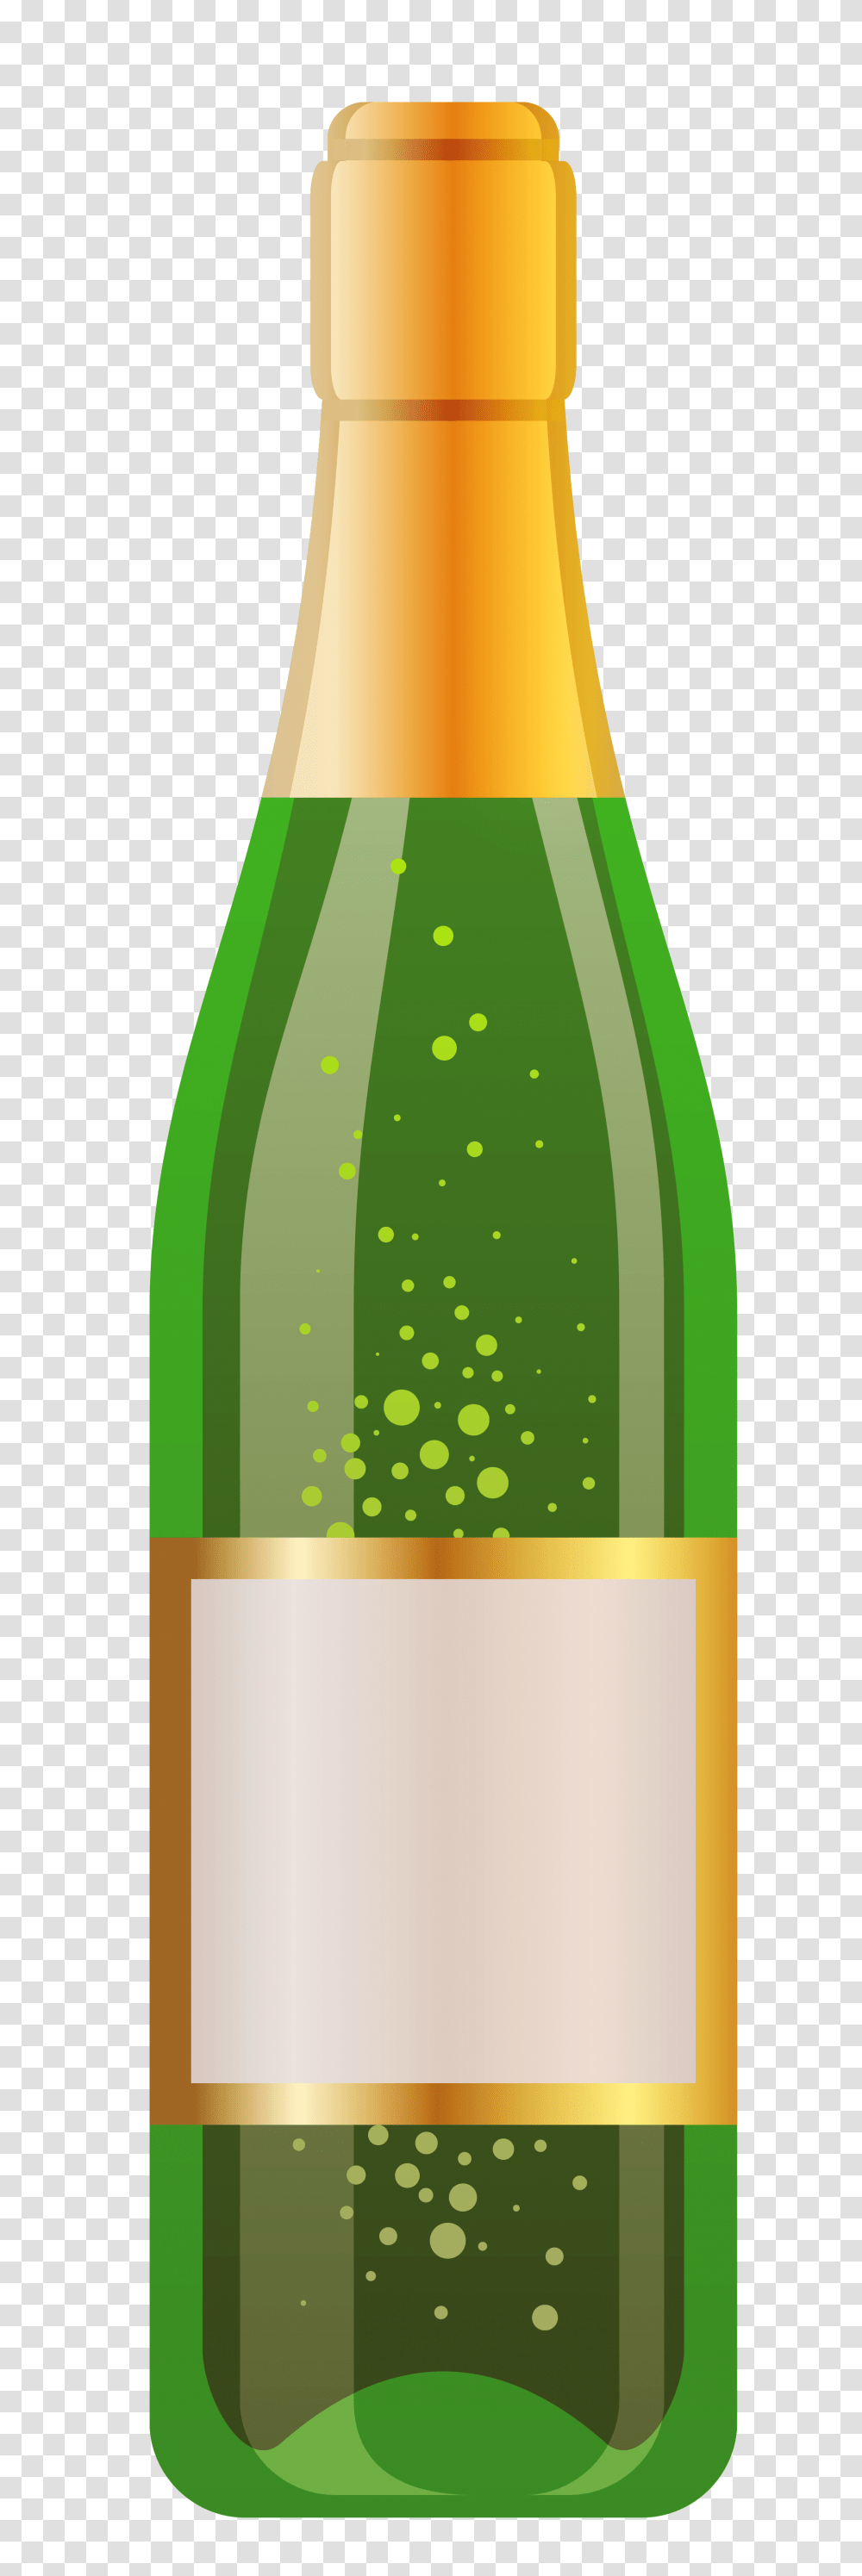 Bottle Of White Wine Vector, Beverage, Drink, Pop Bottle, Alcohol Transparent Png